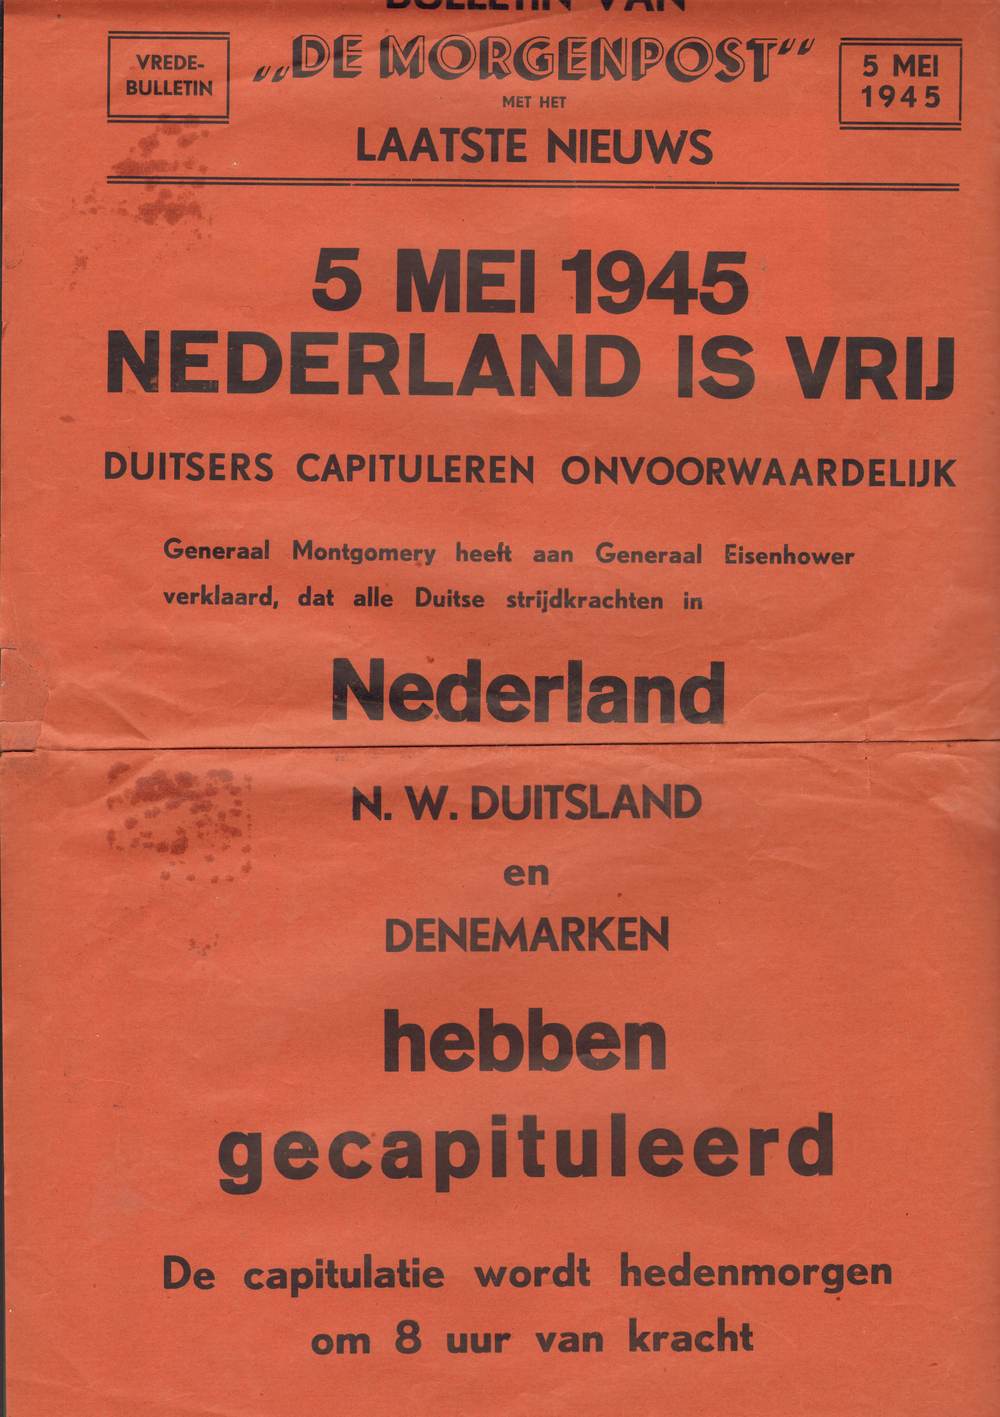 19450505 Bulletin de Morgenpost Capitulatie 754